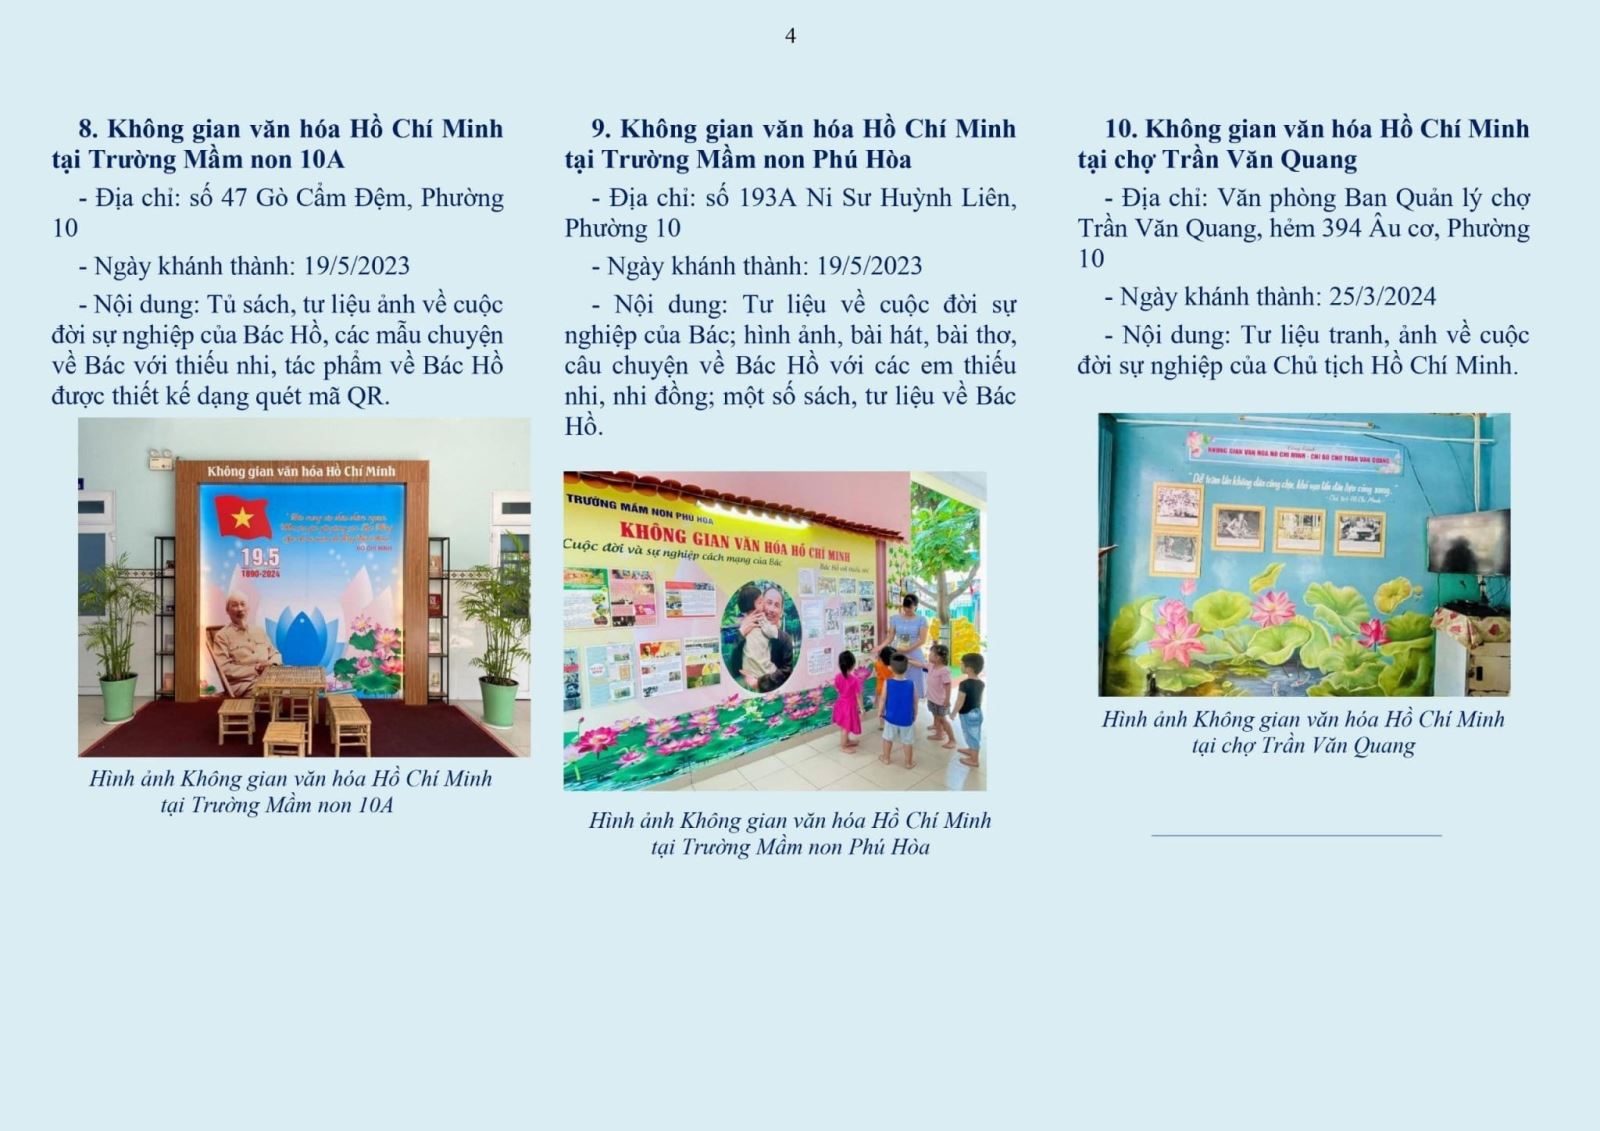 Phường 10: Phát hành tờ gấp tuyên truyền thông tin địa điểm Không gian văn hóa Hồ Chí Minh trên địa bàn phường 10